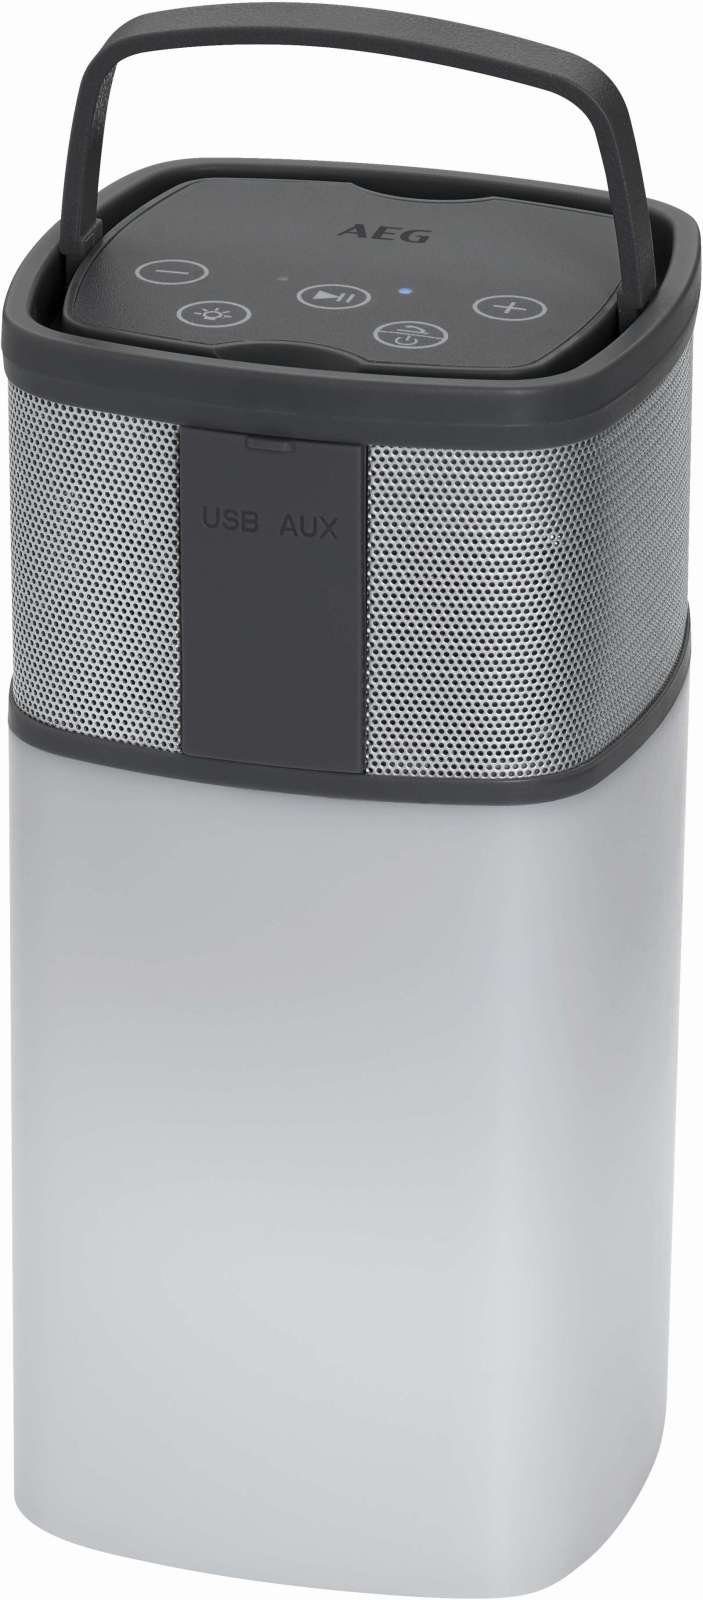 AEG AEG weiß BSS 4841 Bluetooth-Lautsprecher Powerbank Soundsystem Lautsprecher